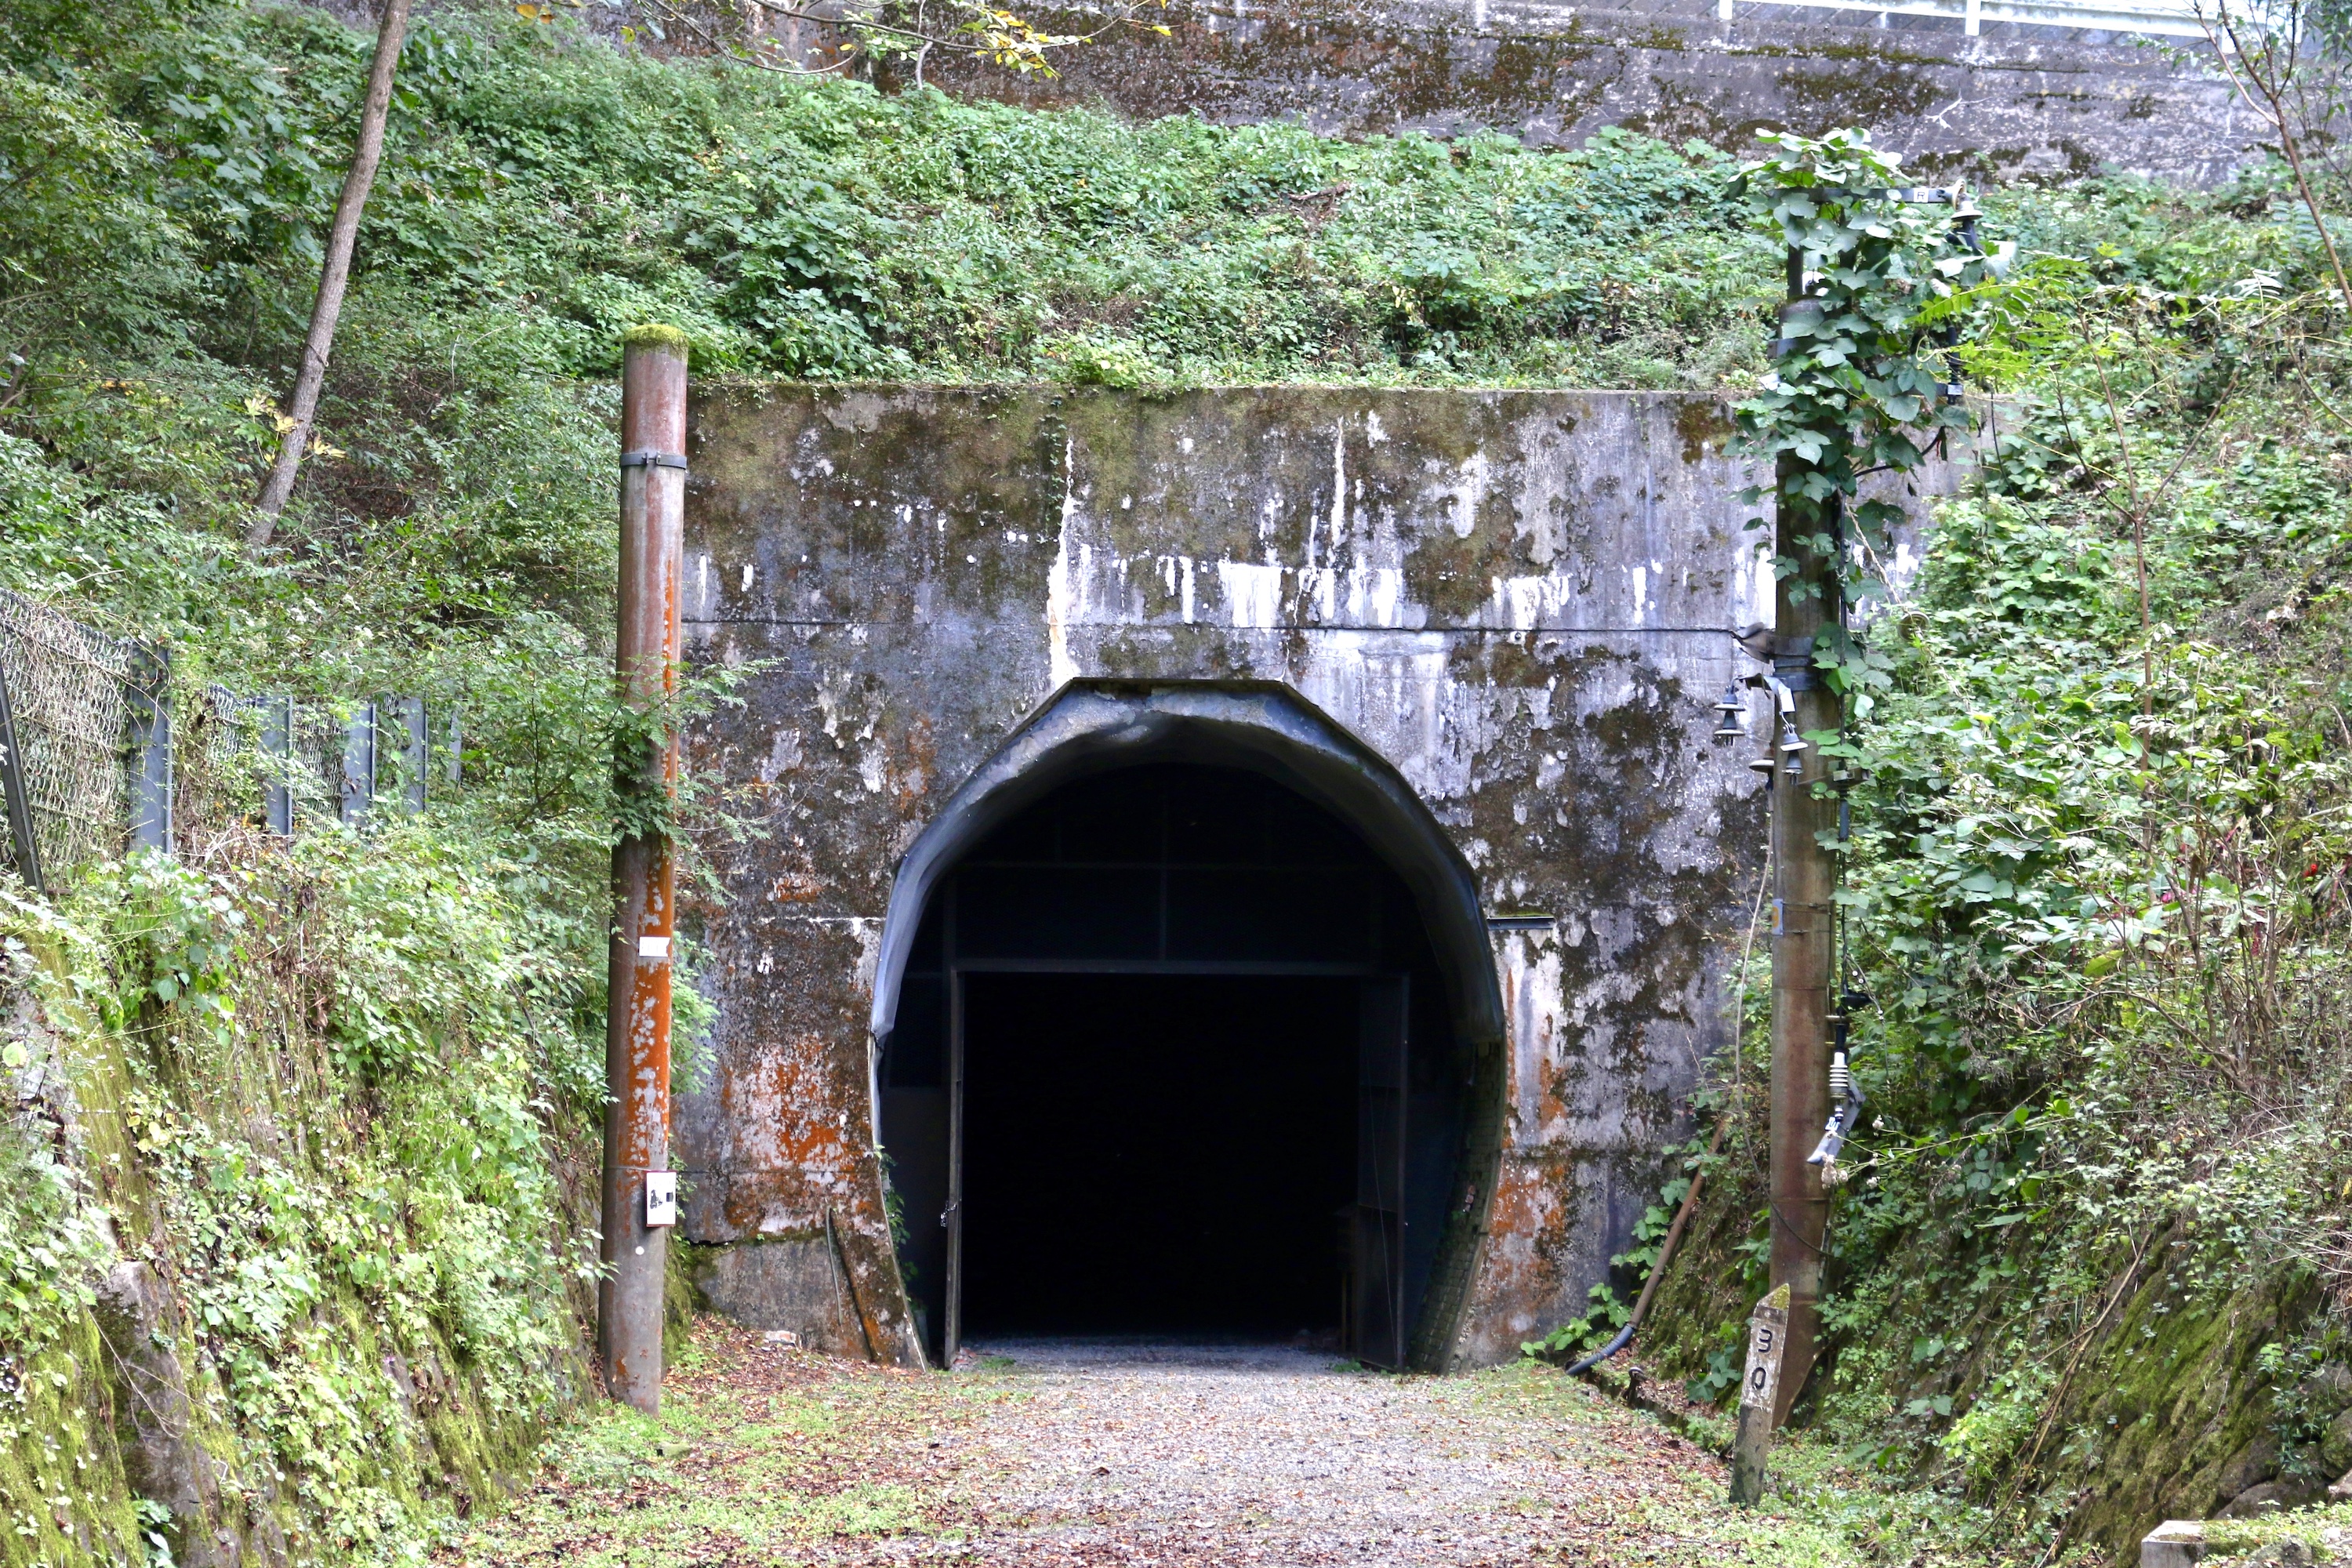 篠ノ井線廃線敷・三五山トンネル